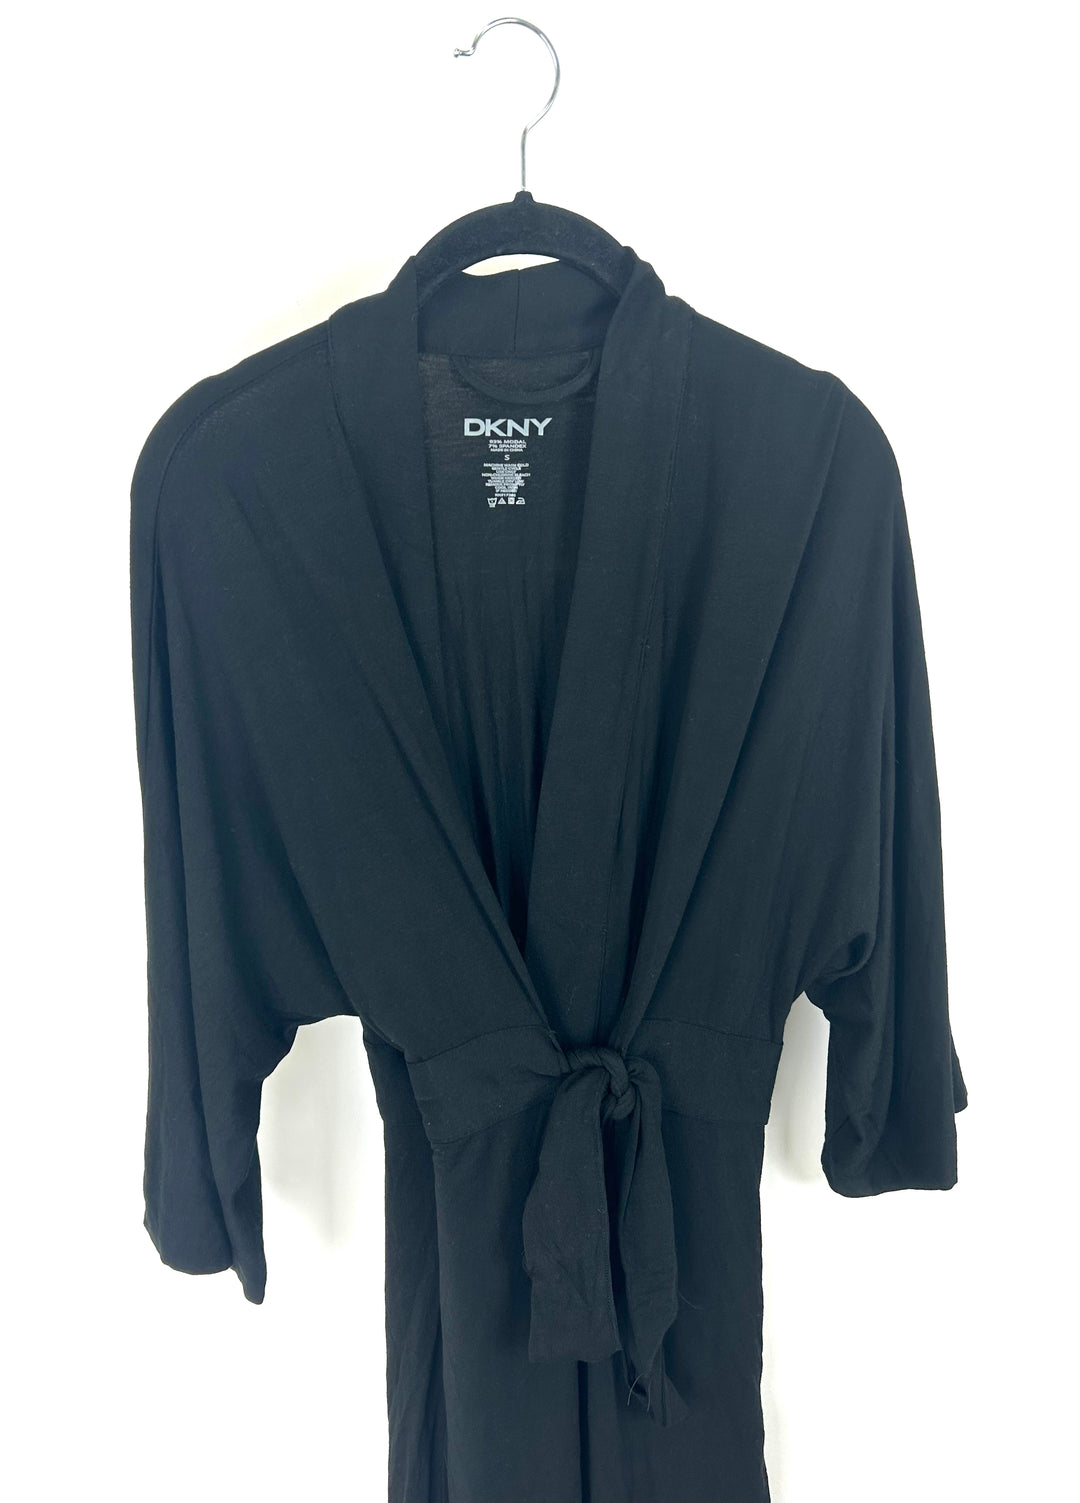 Black Long Robe - Size 4/6